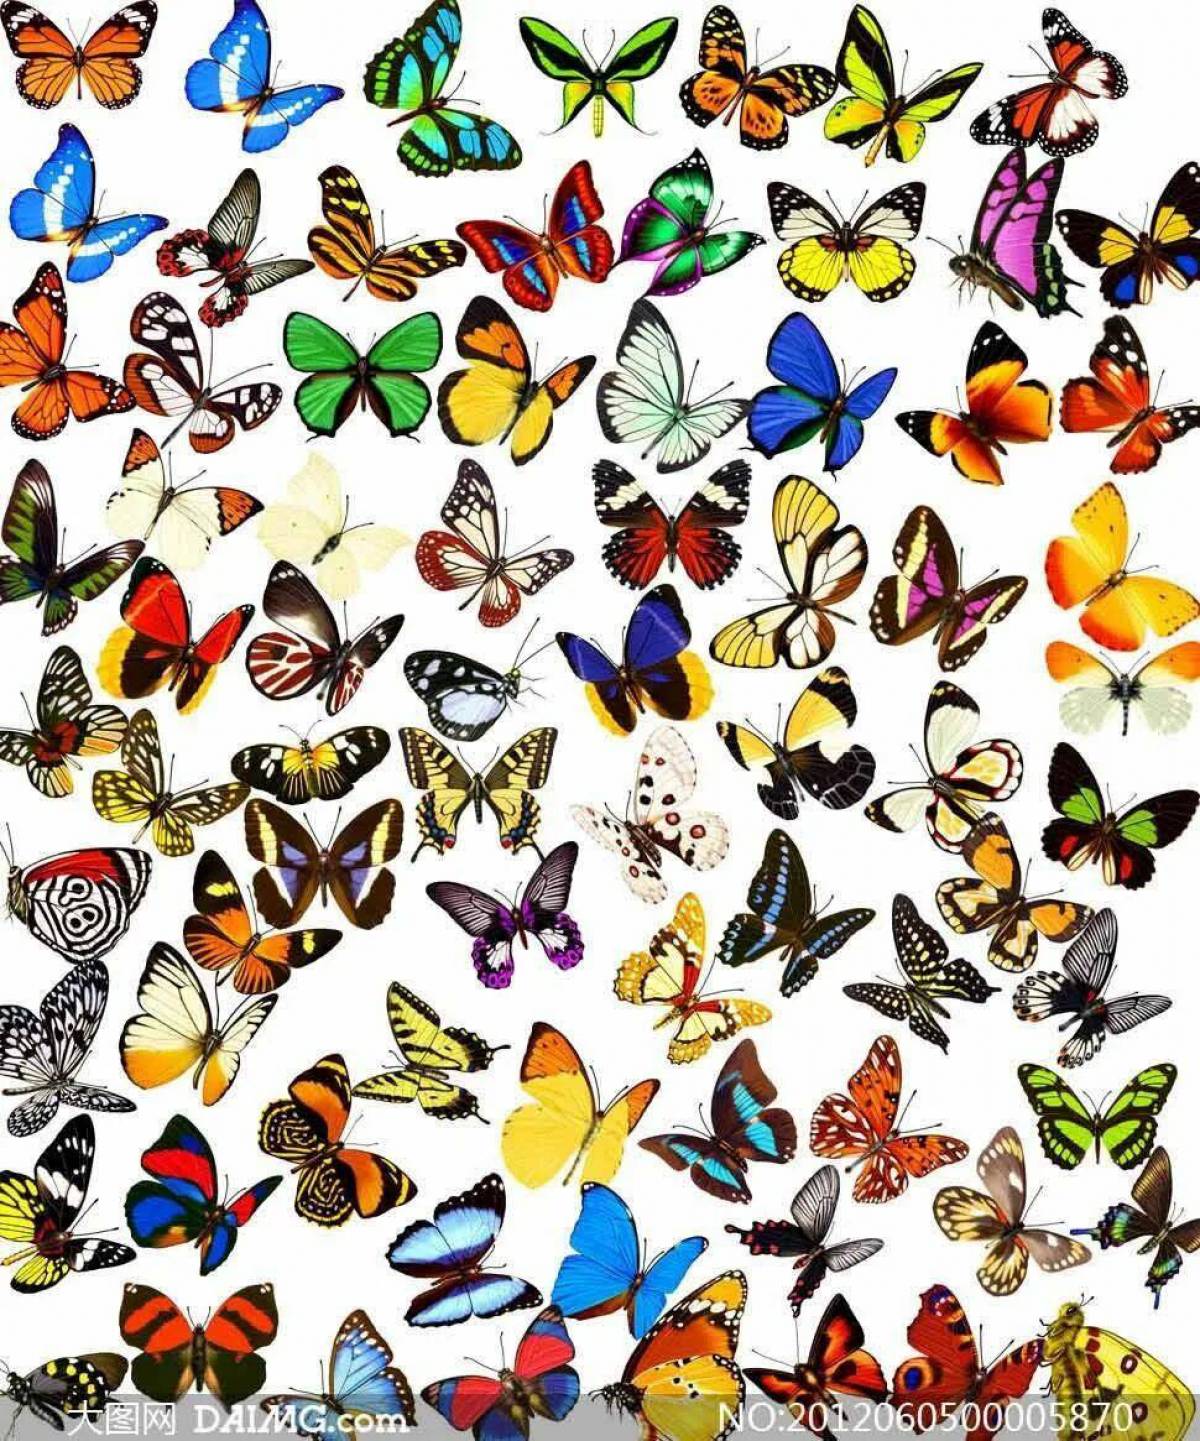 Много картинок на 8. Много бабочек. Разноцветные бабочки. Множество бабочек. Бабочки маленькие цветные.